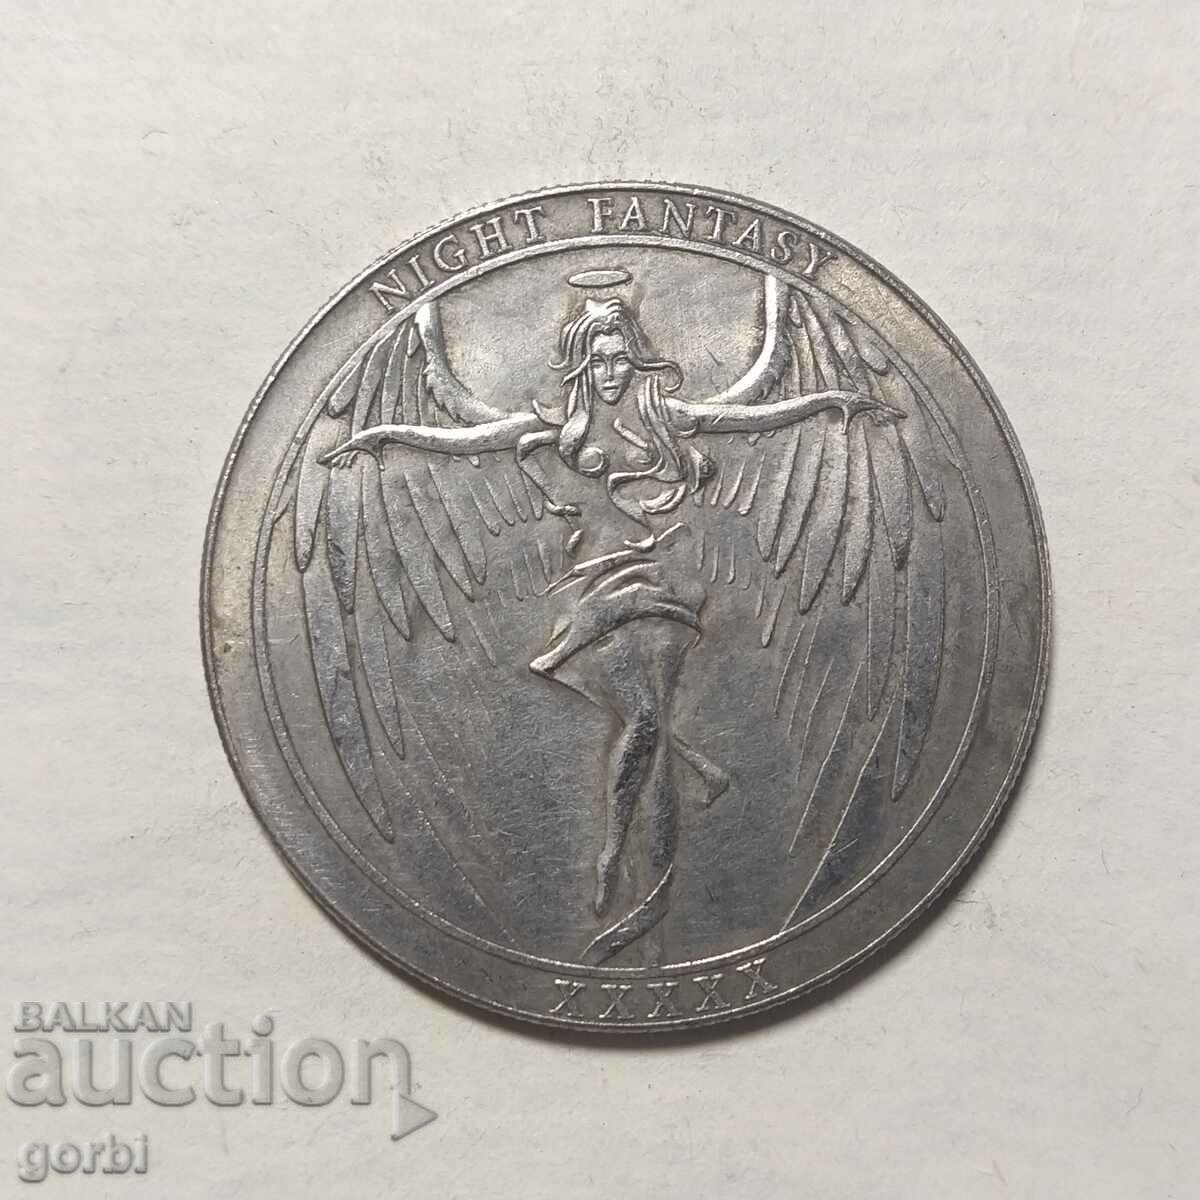 coin - replica, medal, plaque, fantasy coin